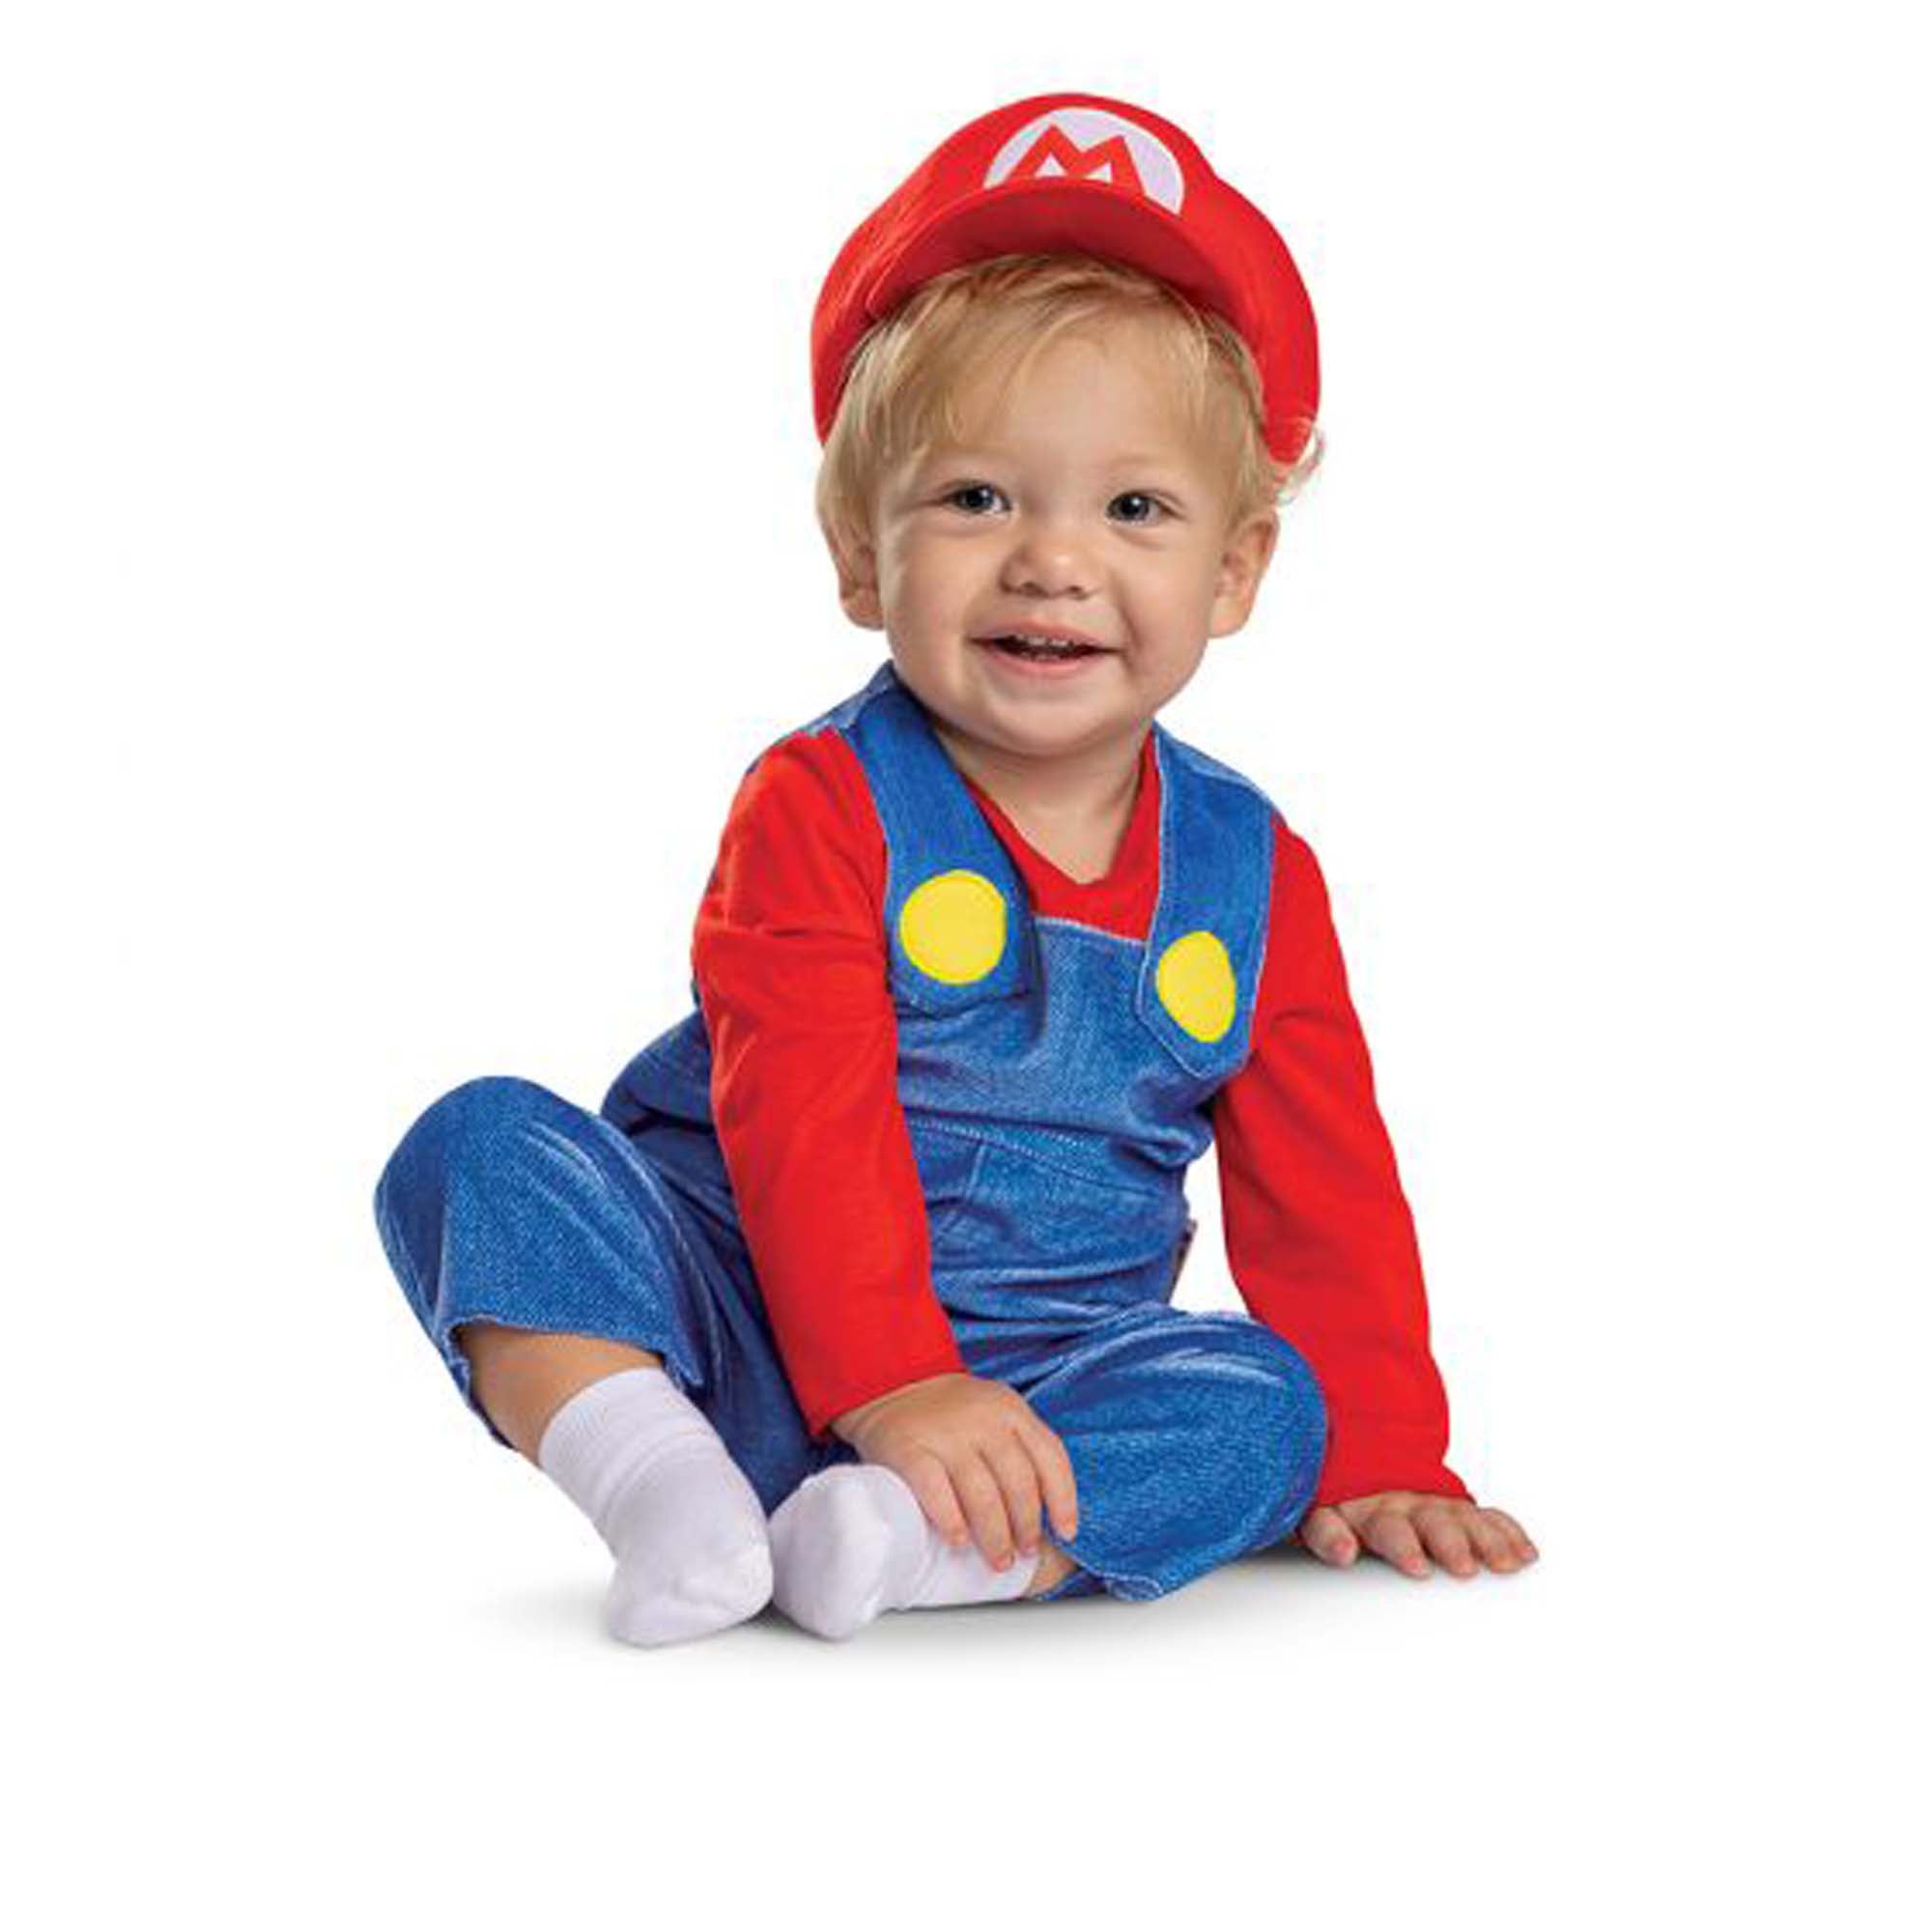 Déguisement Mario Bros Prestige enfant . Les plus amusants